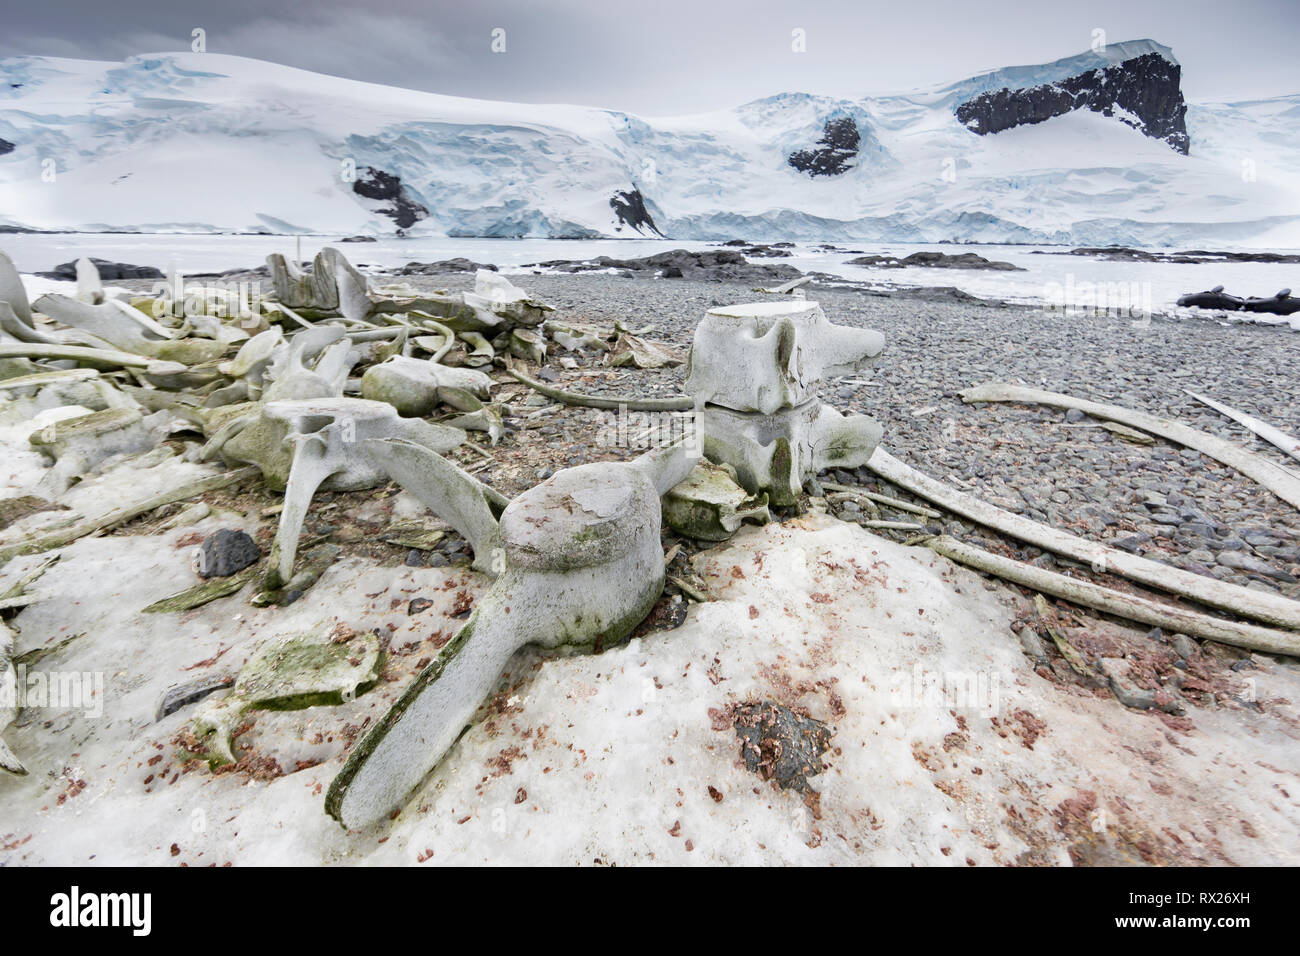 Los huesos de ballena satisfacer a los visitantes Mikkelson Harbor, en la isla Trinidad. La Península Antártica, en la Antártida. Foto de stock